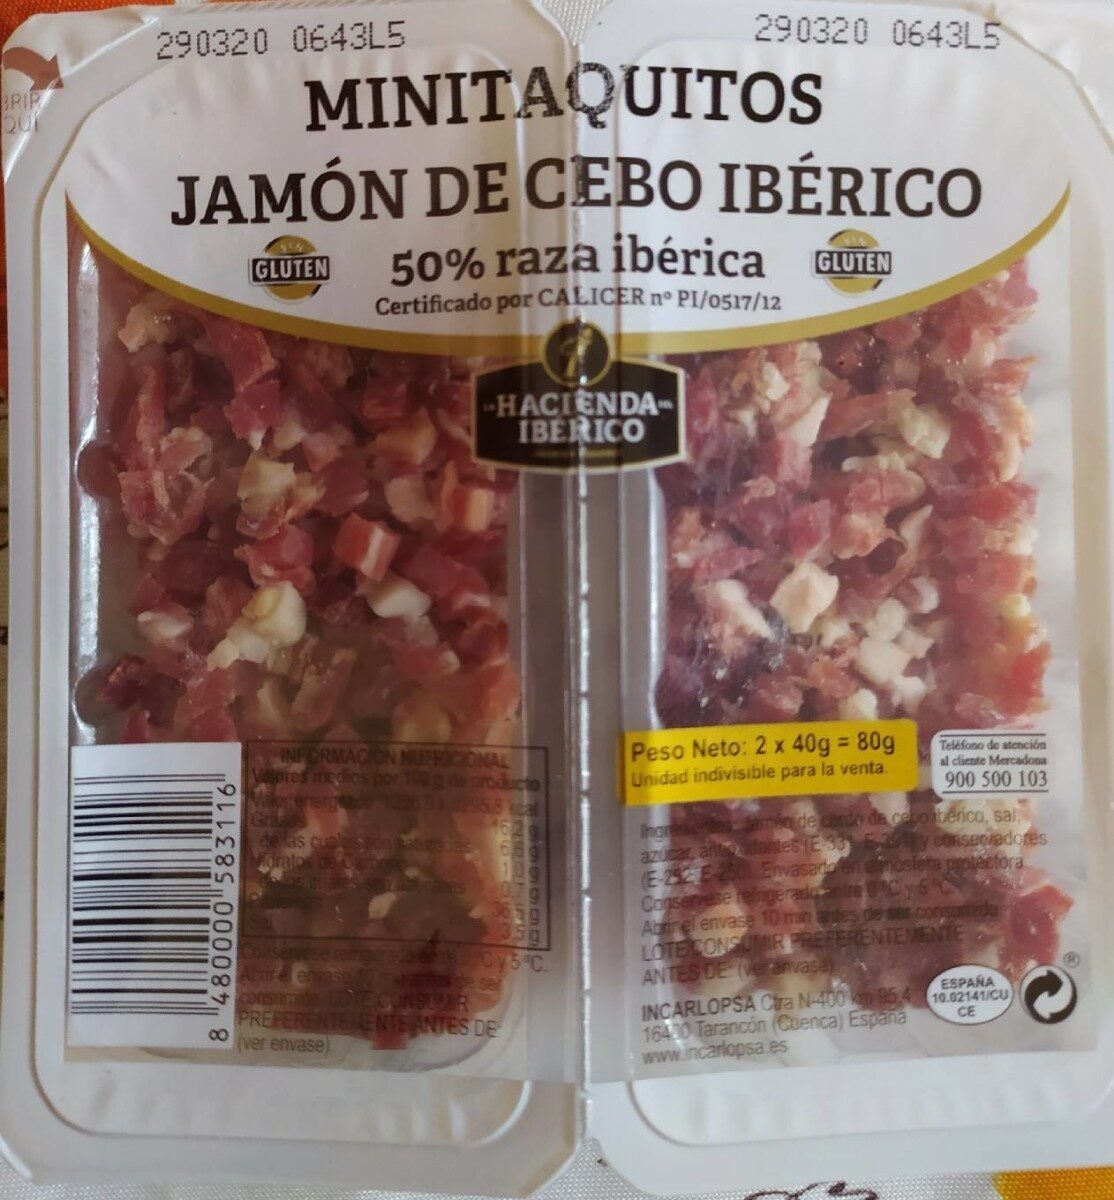 MINITAQUITOS JAMÓN DE CEBO IBÉRICO - Producte - es